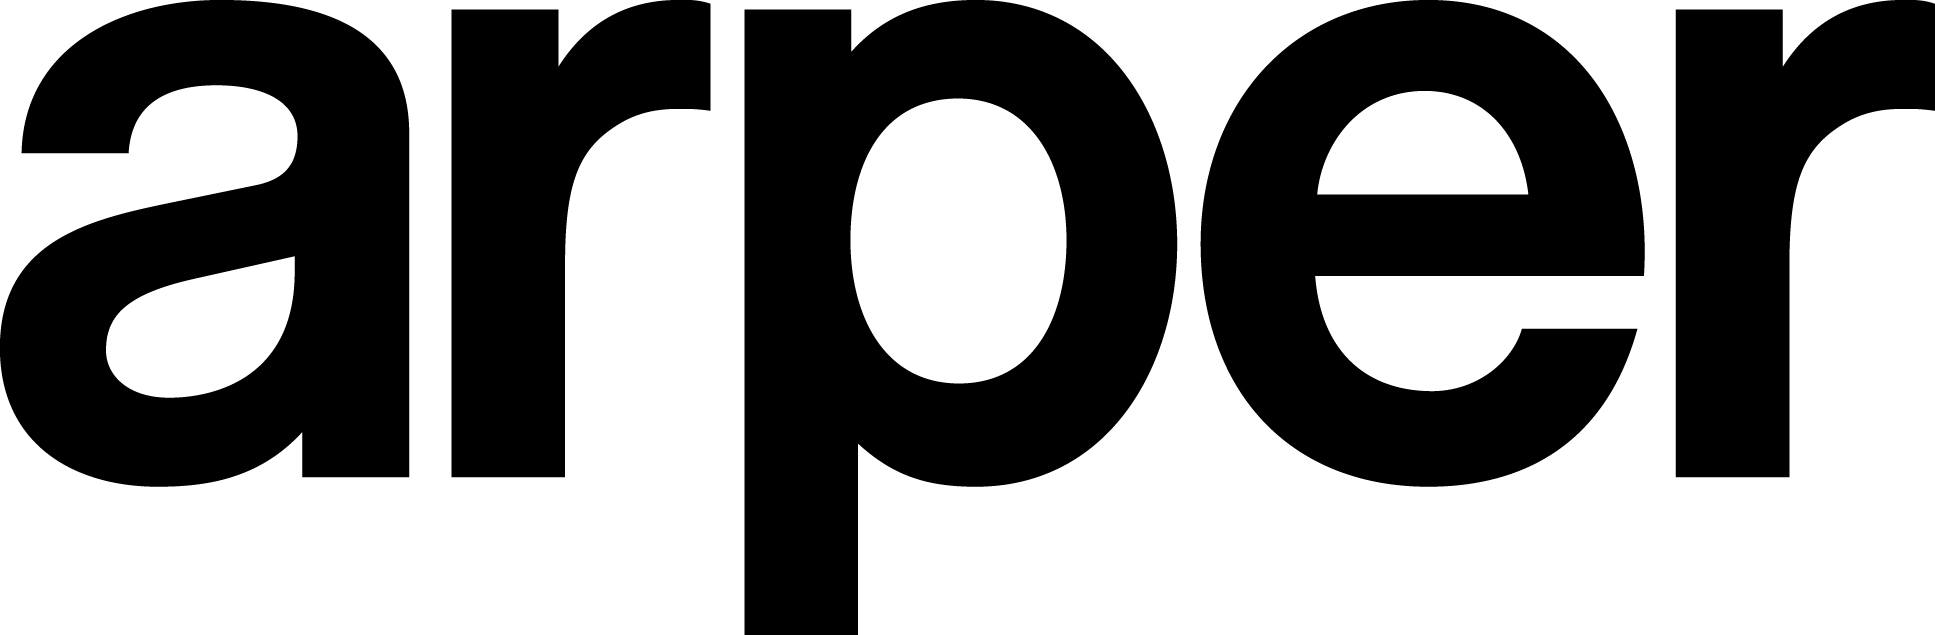 Arper logo2011.jpg